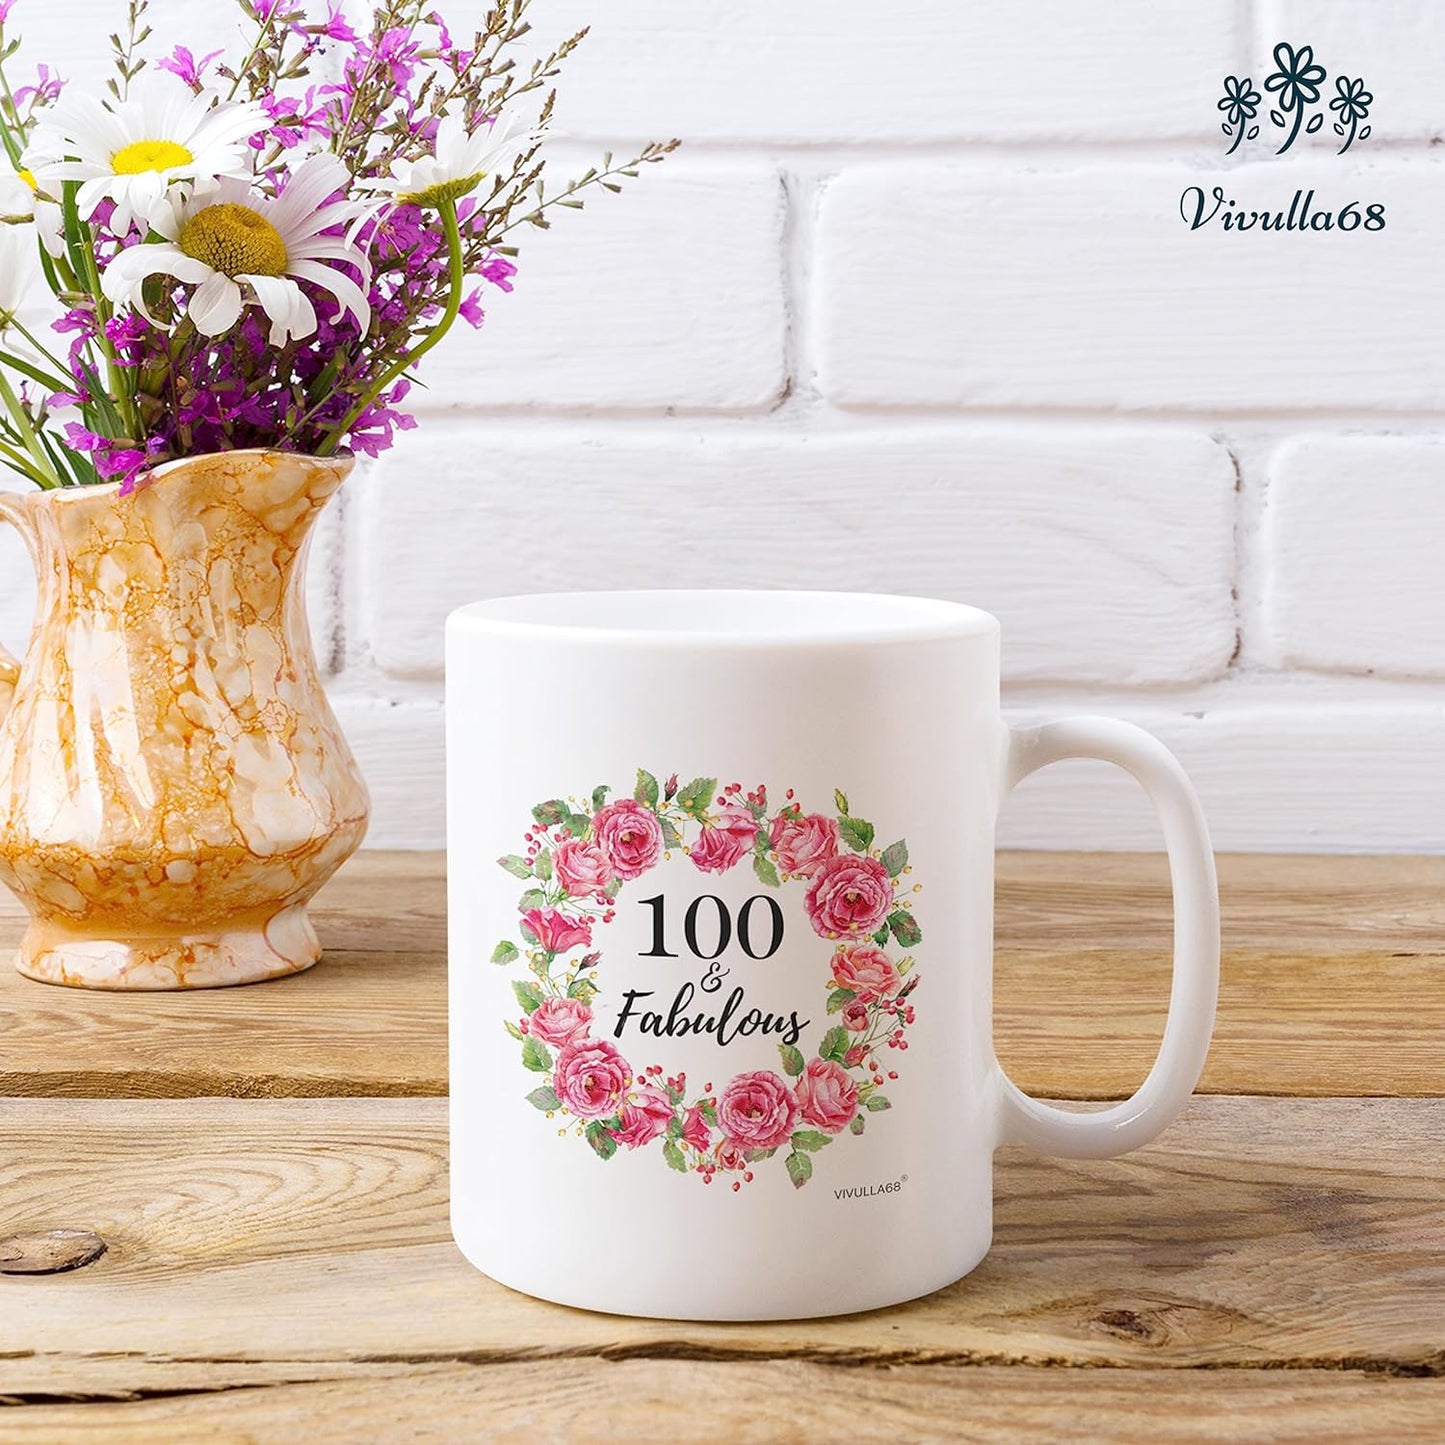 Vivulla68 100 & Fabulous Birthday Mug, 100th Birthday Gifts For Women, Birthday Gifts For 100 Year Old Woman, Gifts Ideas For 100th Birthday, 100th Birthday Decorations For Women Men, Turning 100 Gift